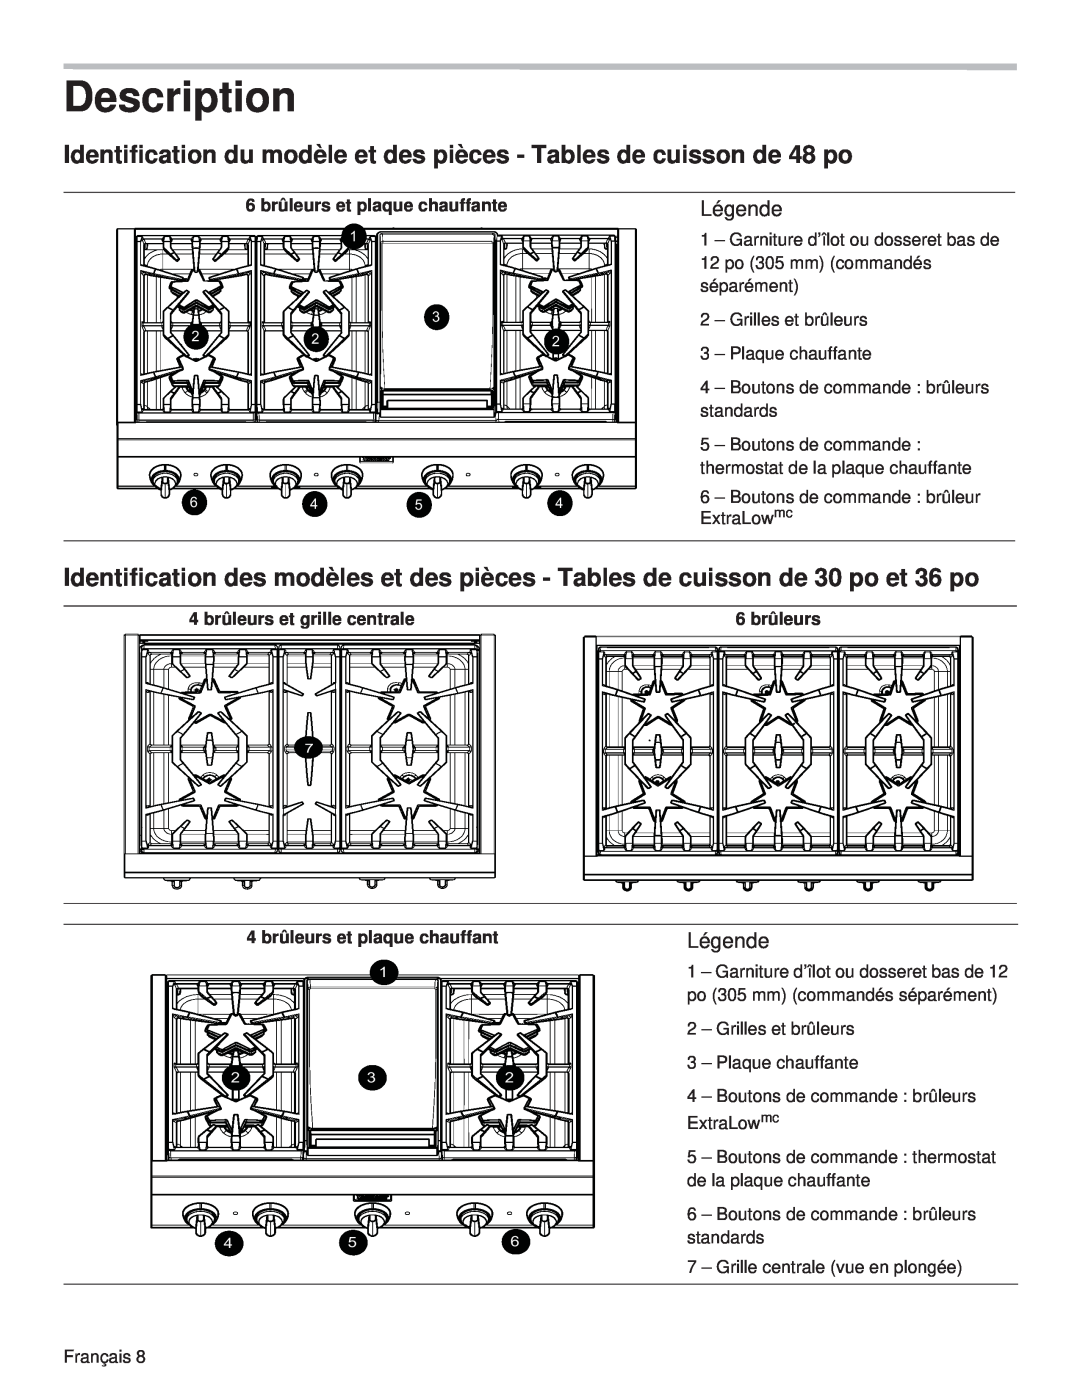 Thermador PCG48 Description, Identification du modèle et des pièces - Tables de cuisson de 48 po, Légende, 6 brûleurs 